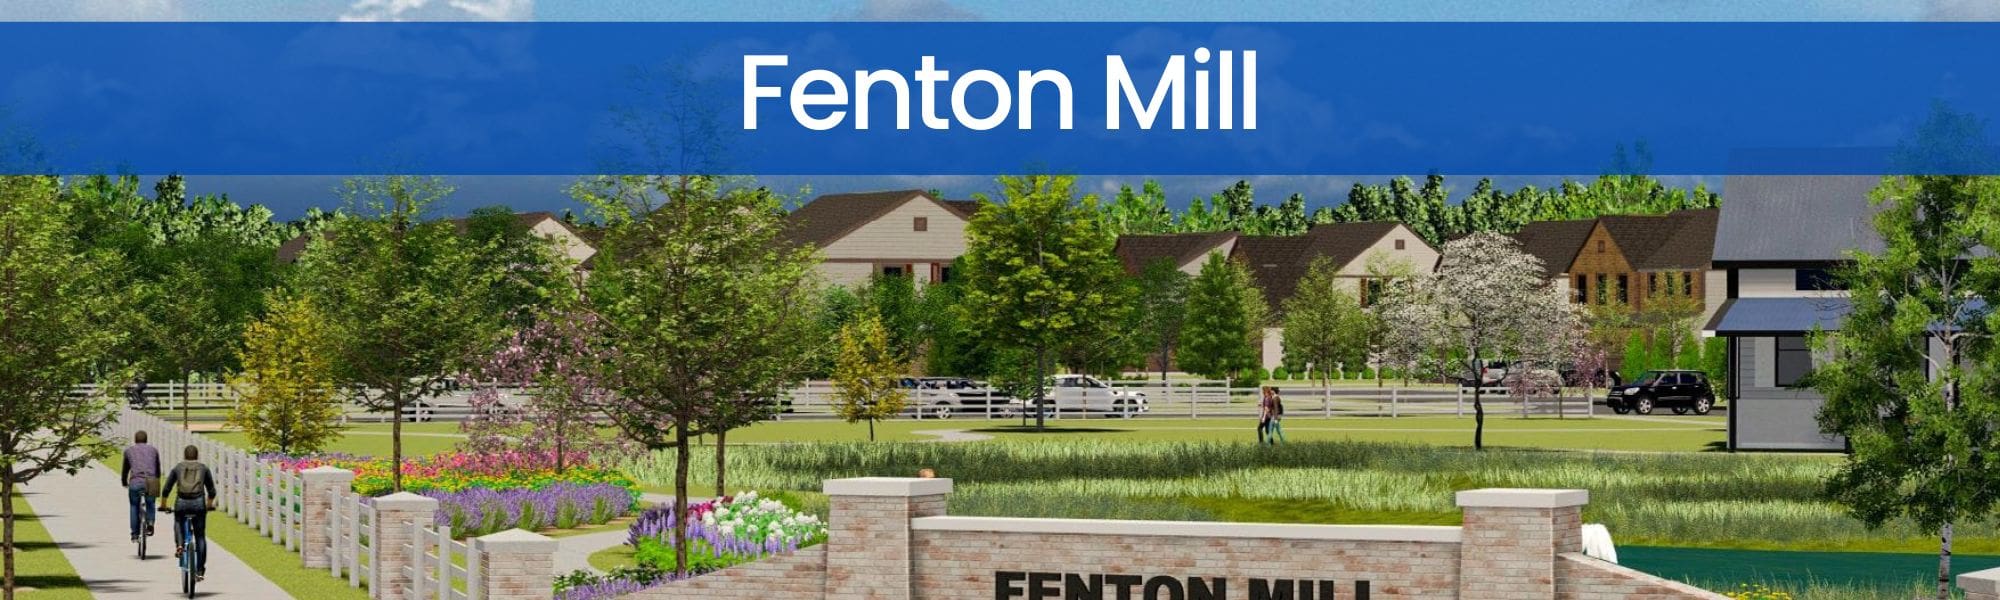 Fenton Mill